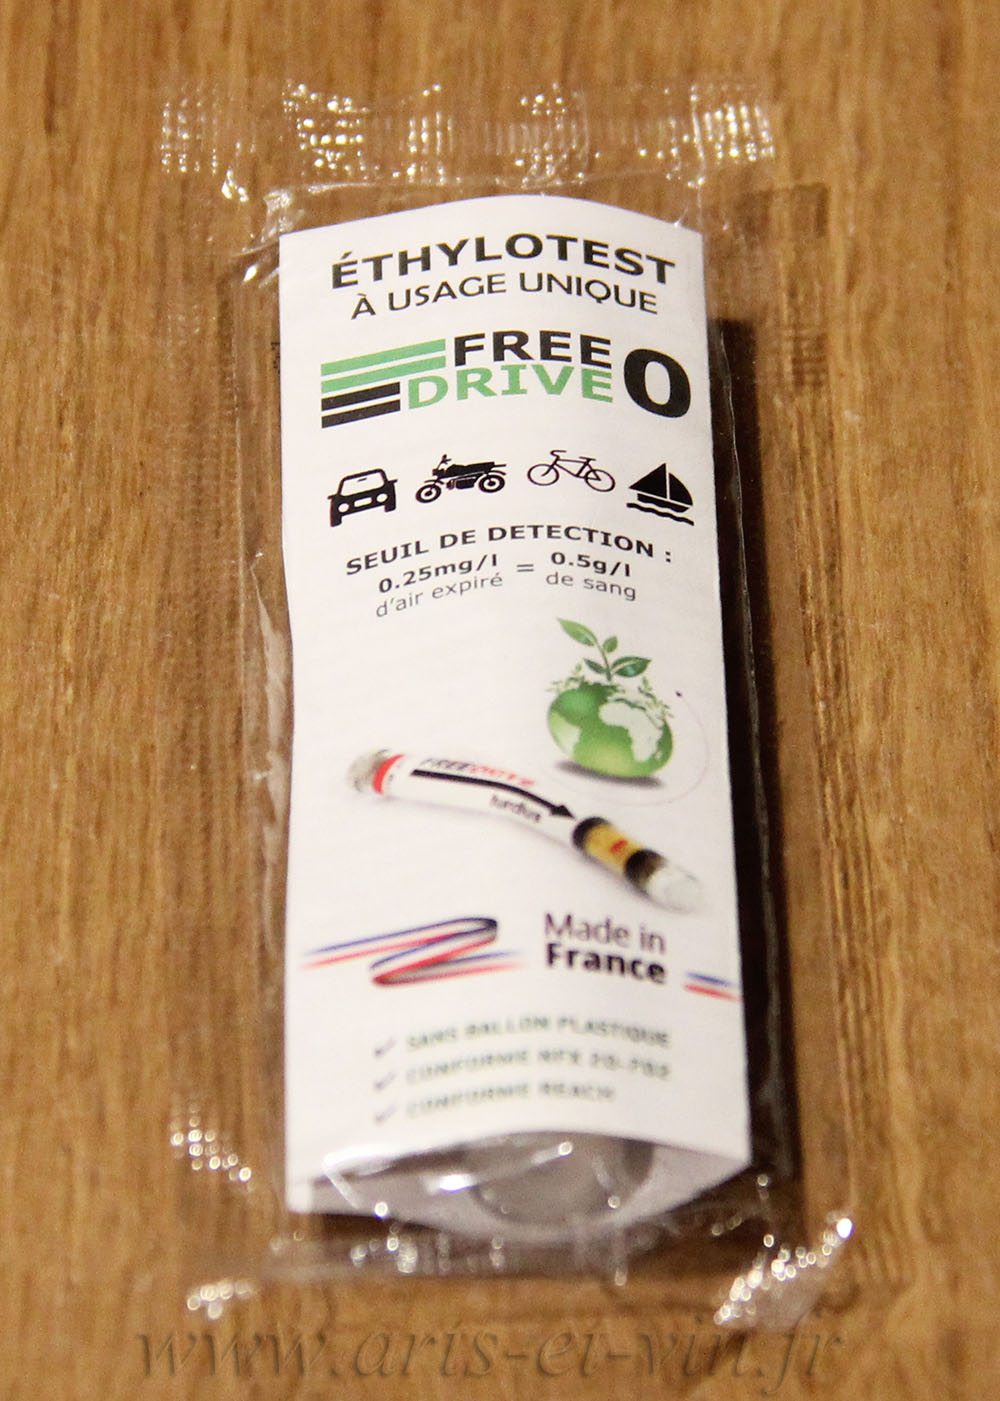 Ethylotest a usage unique free 3 0,2 gr 0,5 gr